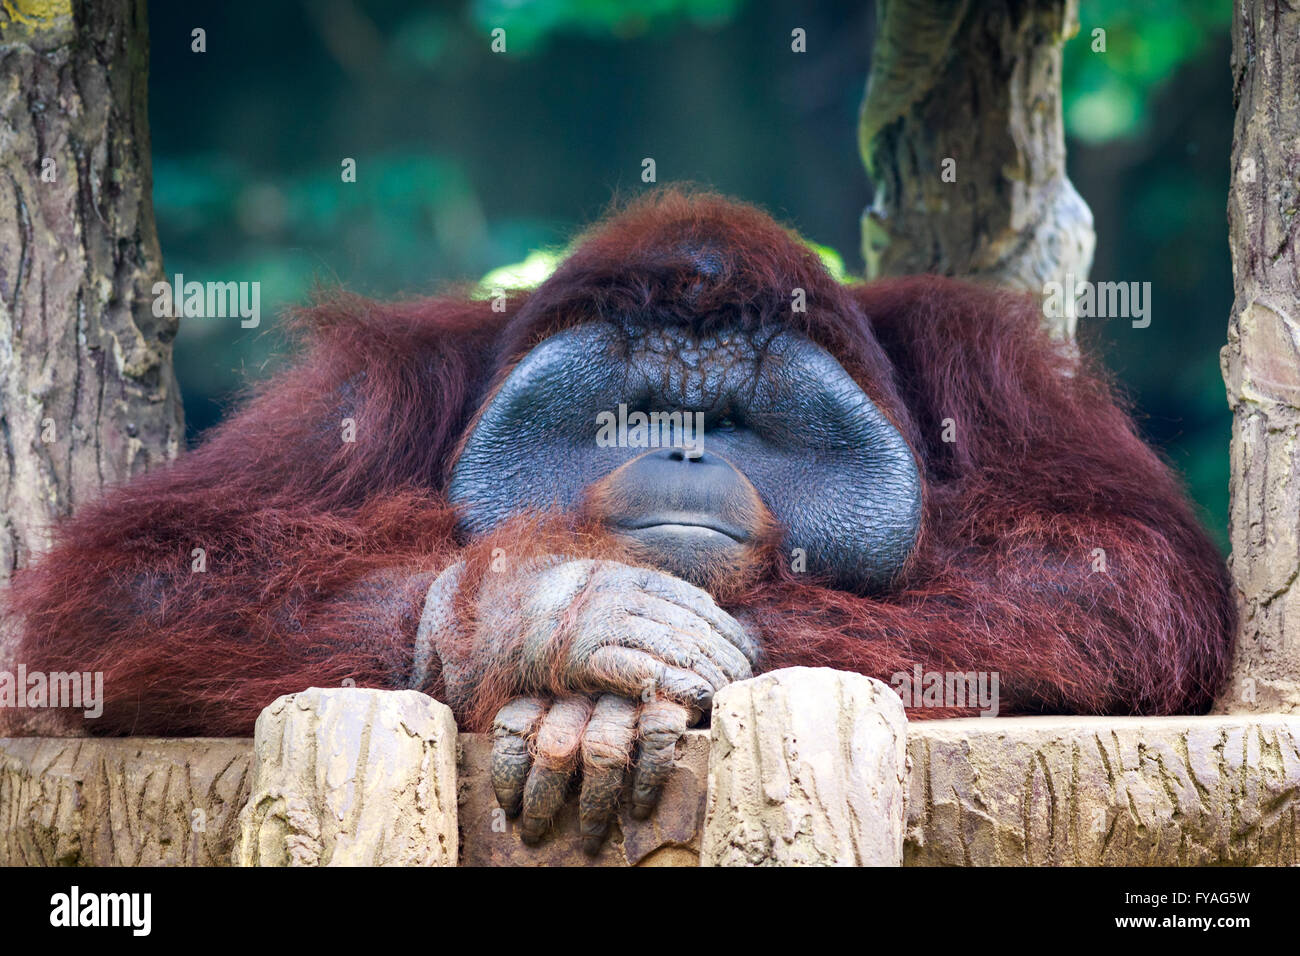 Orangután posando delante de la cámara. Los orangutanes son exclusivamente las dos especies asiáticas de extant grandes simios. Foto de stock